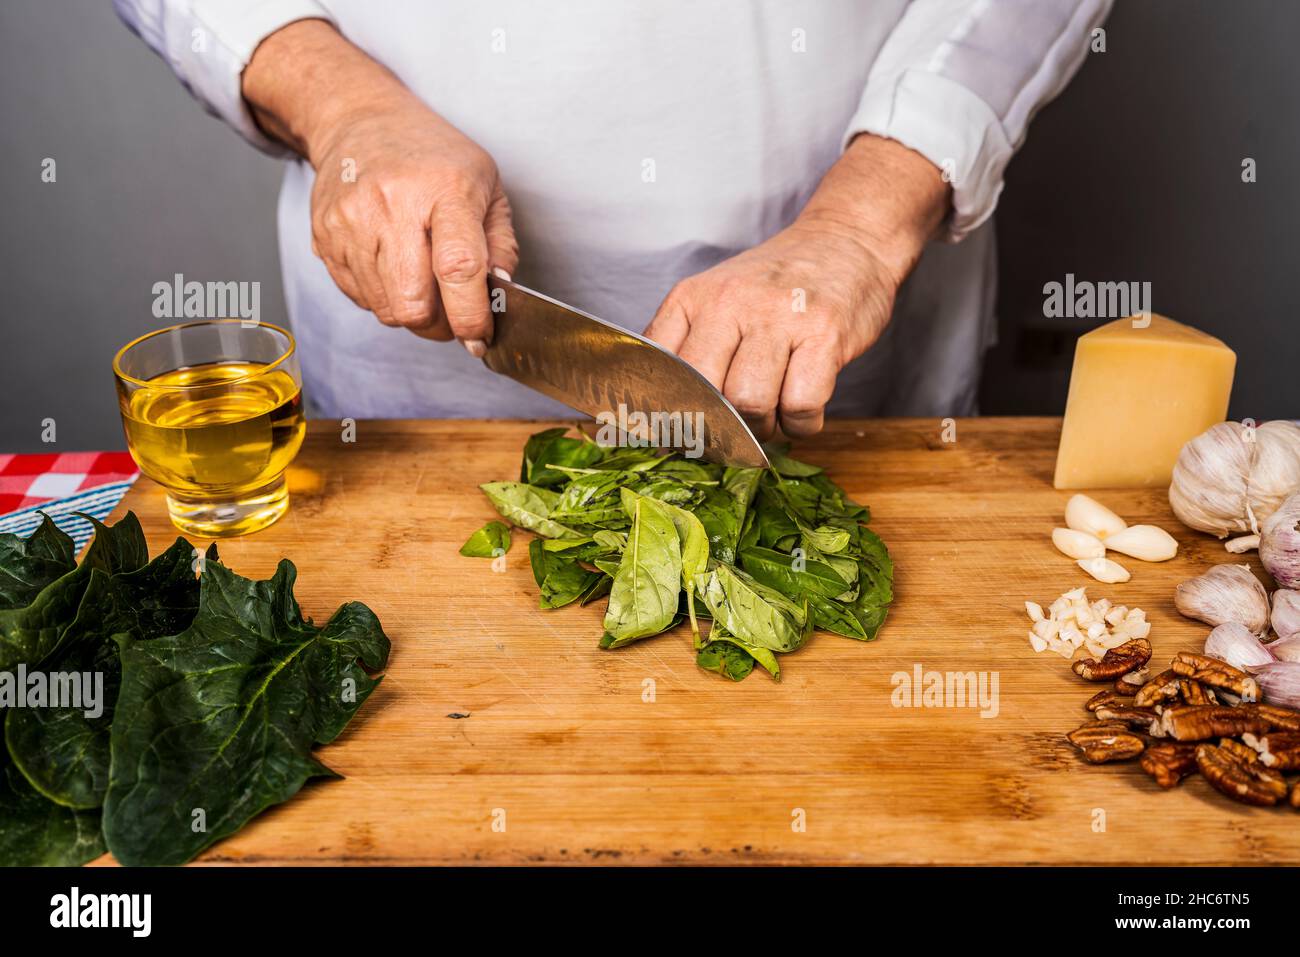 Vue de face d'une femme adulte méconnue coupant du basilic avec un couteau de cuisine sur une table en bois pour la préparation d'une sauce pesto. Banque D'Images